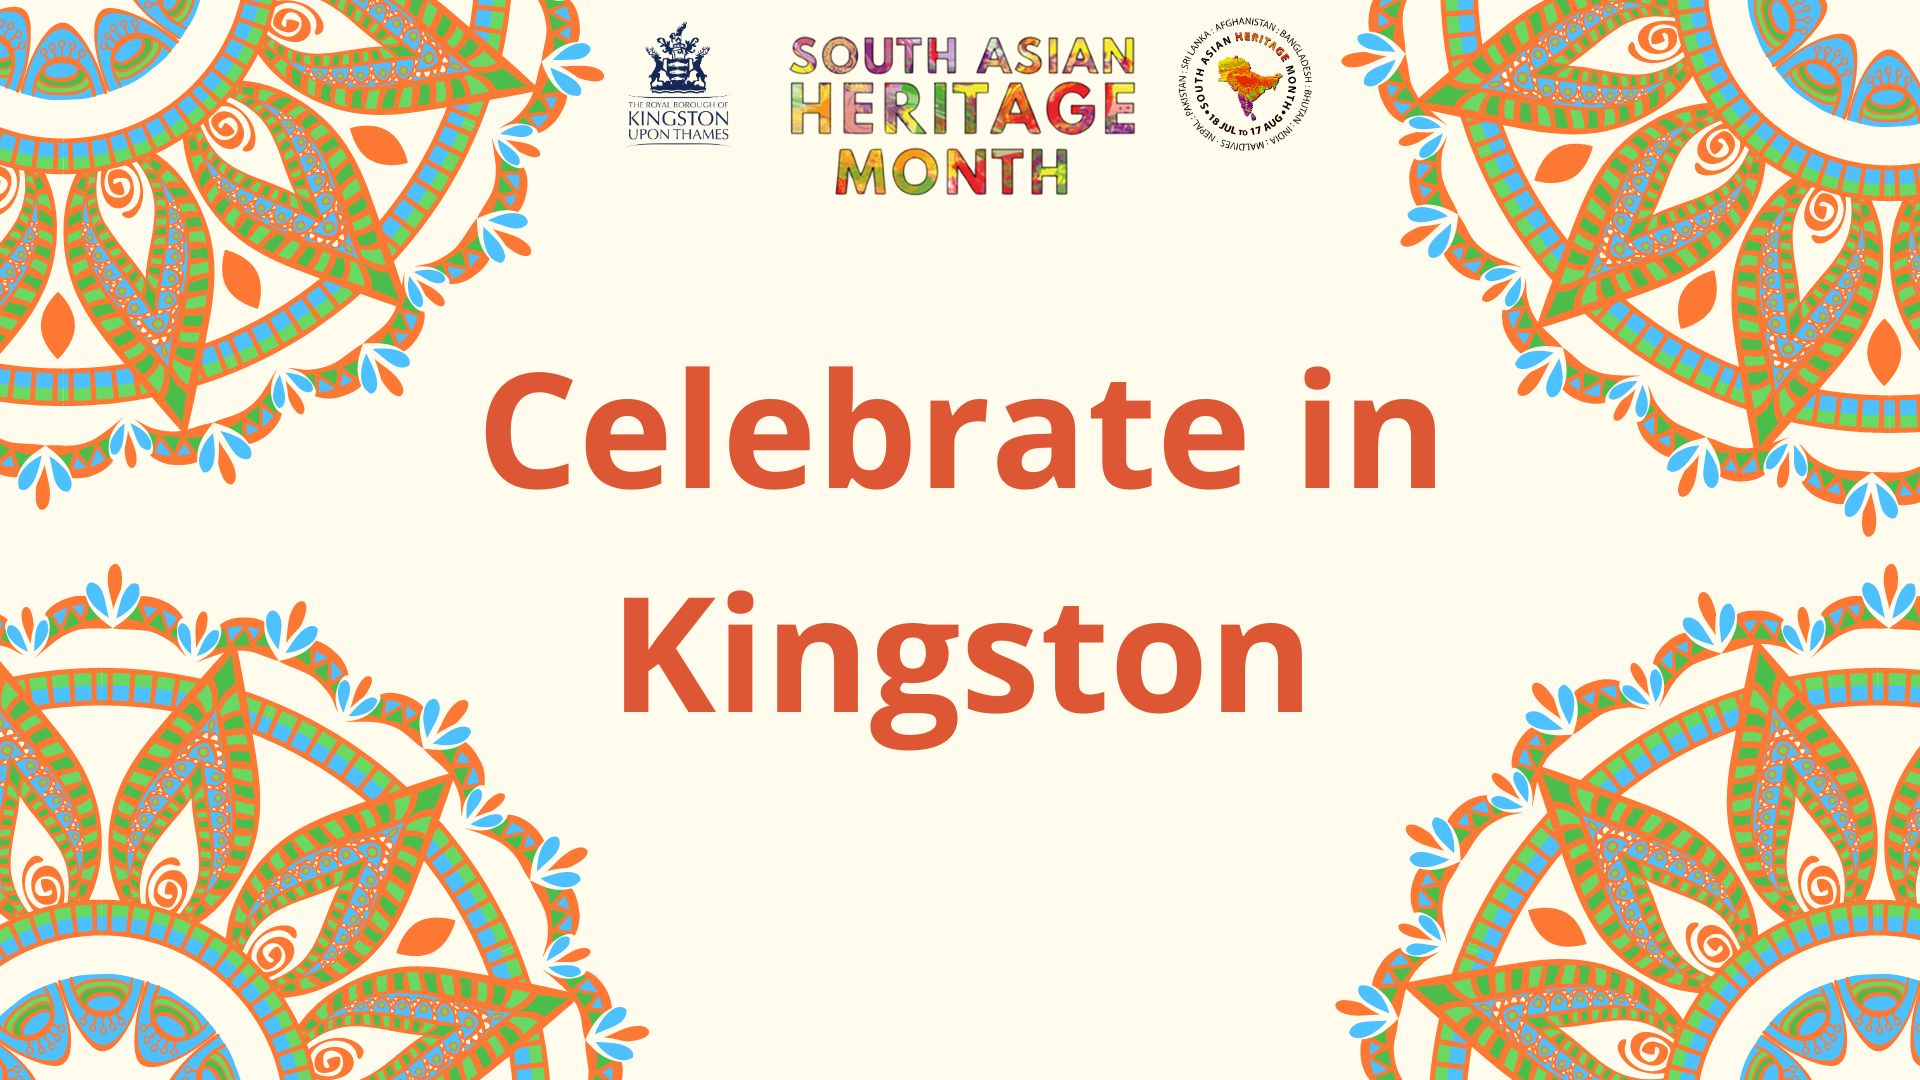 Celebrate in SAHM in Kingston